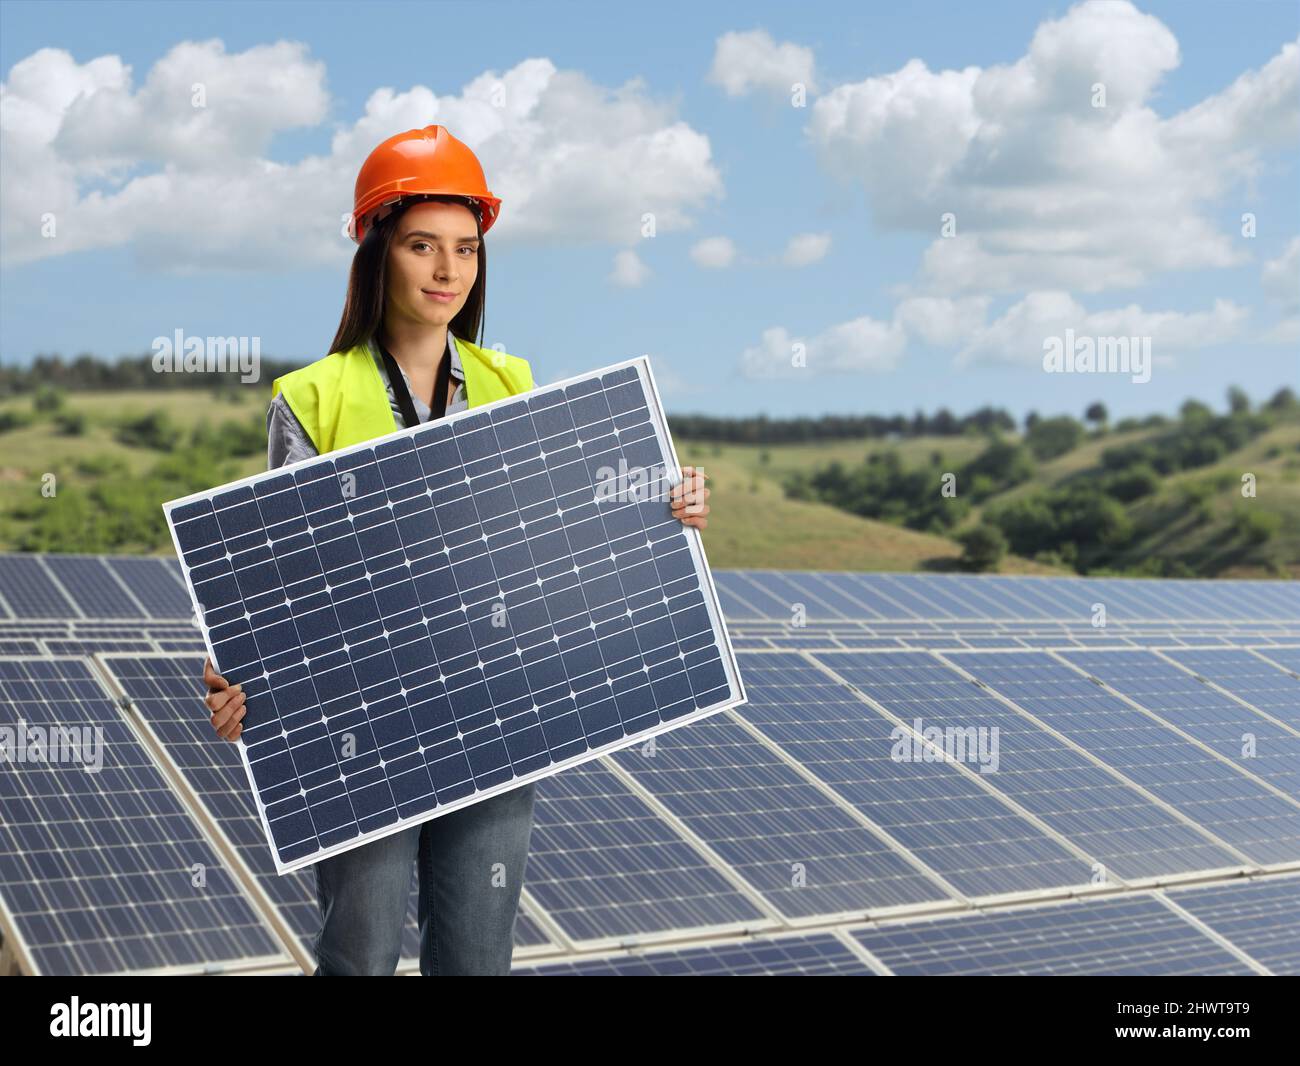 Jeune femme ingénieur tenant un panneau solaire photovoltaïque sur une centrale solaire photovoltaïque Banque D'Images